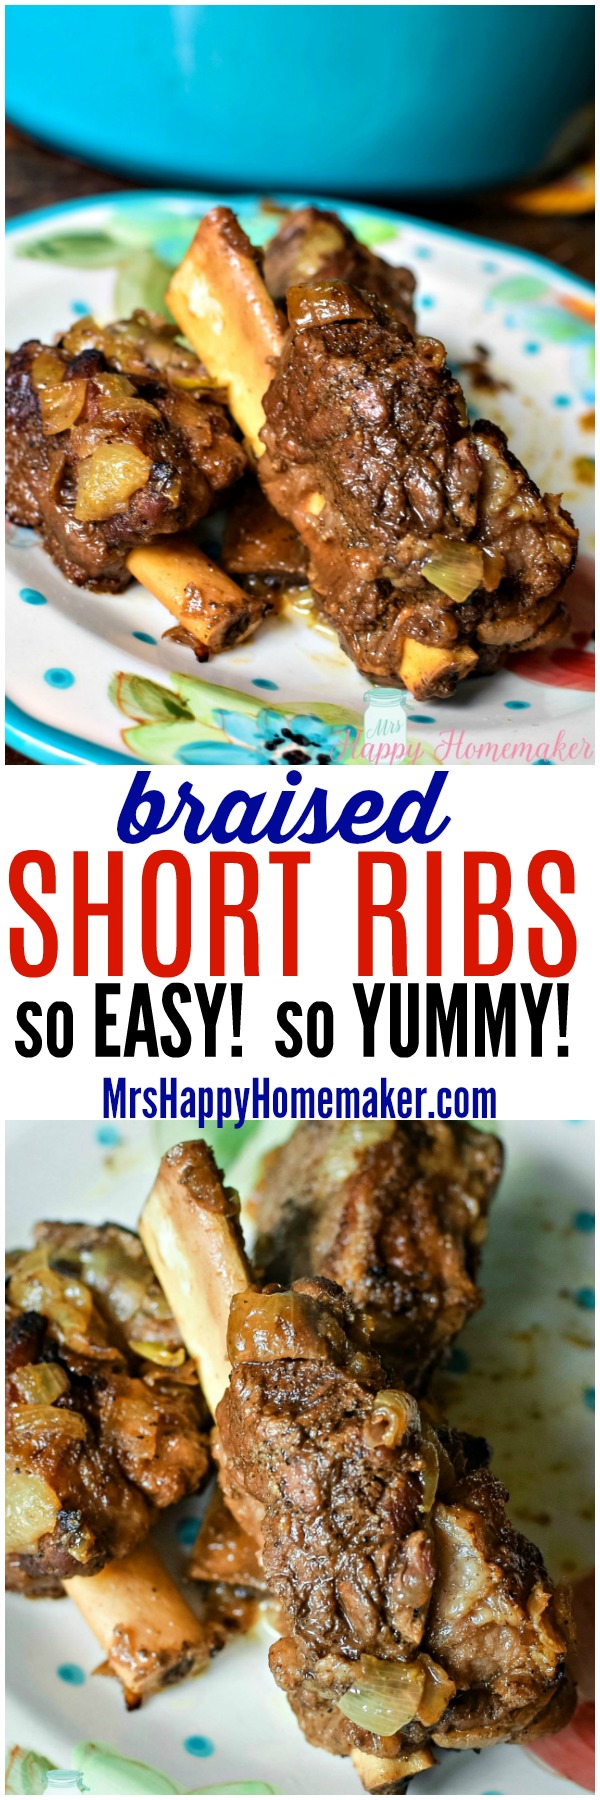 Easy Braised Short Ribs | MrsHappyHomemaker.com @MrsHappyHomemaker 